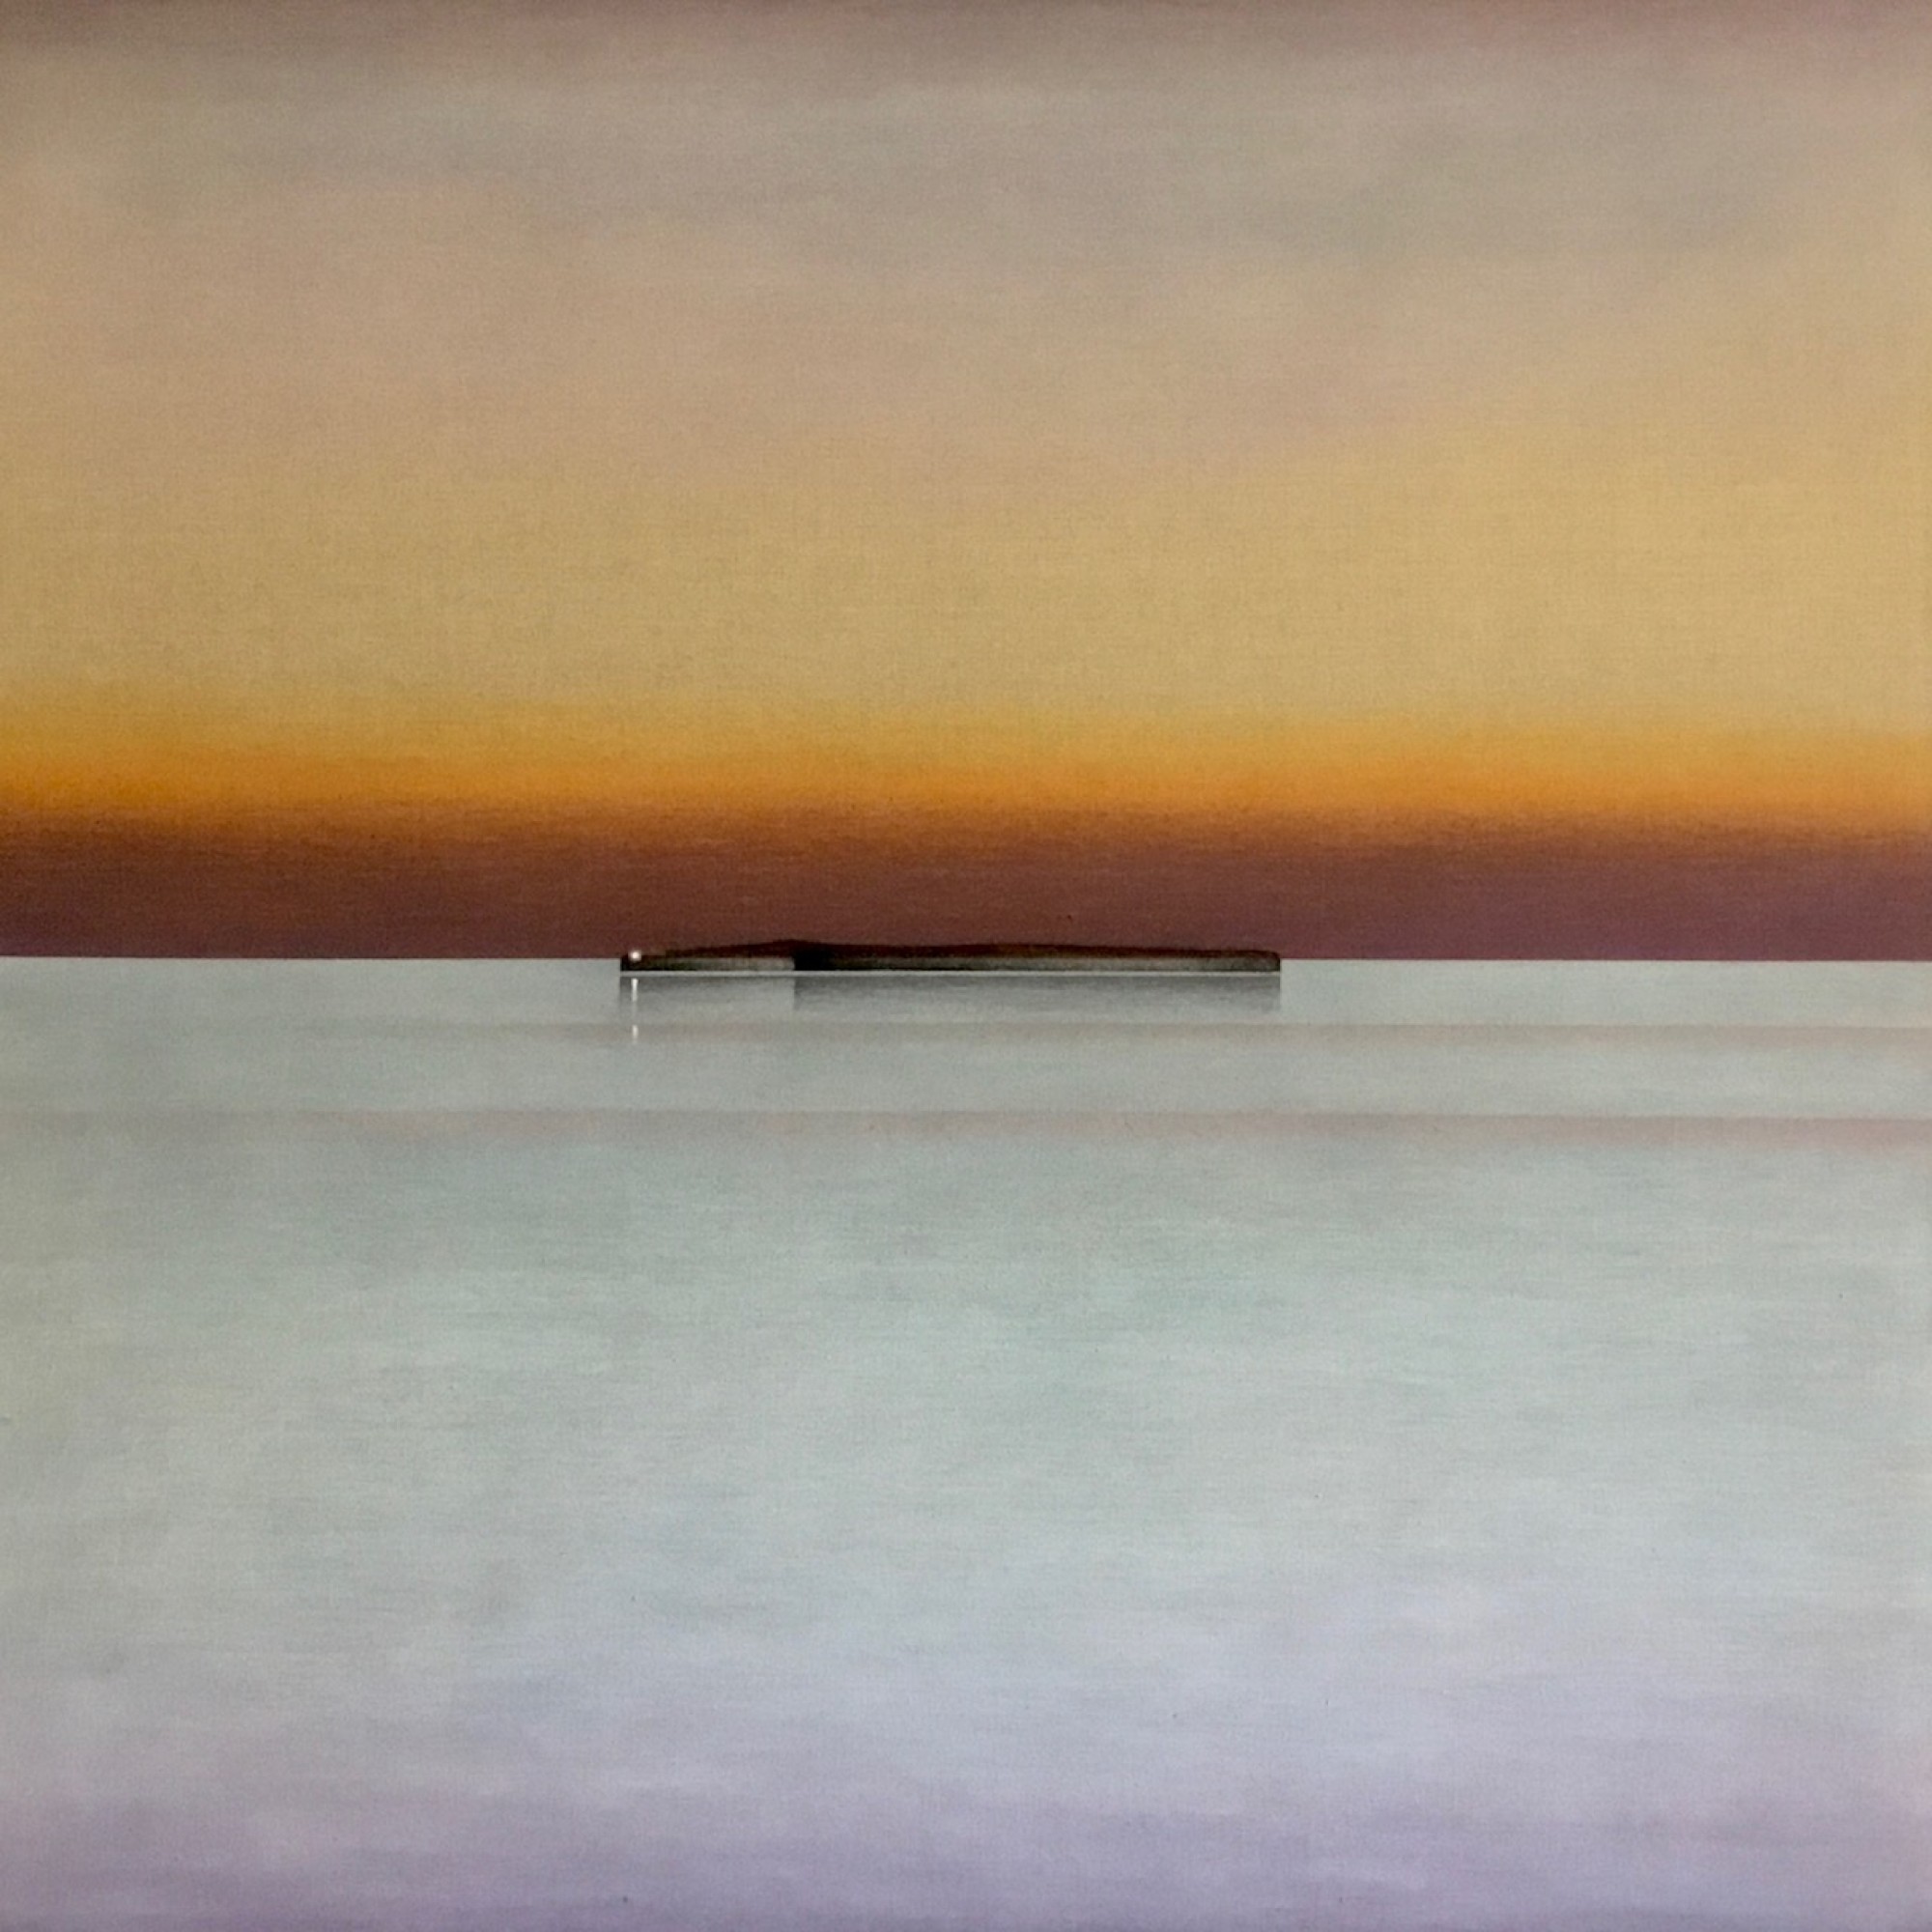 Pastell auf Leinwand Gemälde, das
                                          die Insel Santo Spirito im Sonnenuntergang zeigt, auf der ein Licht zu sehen ist.